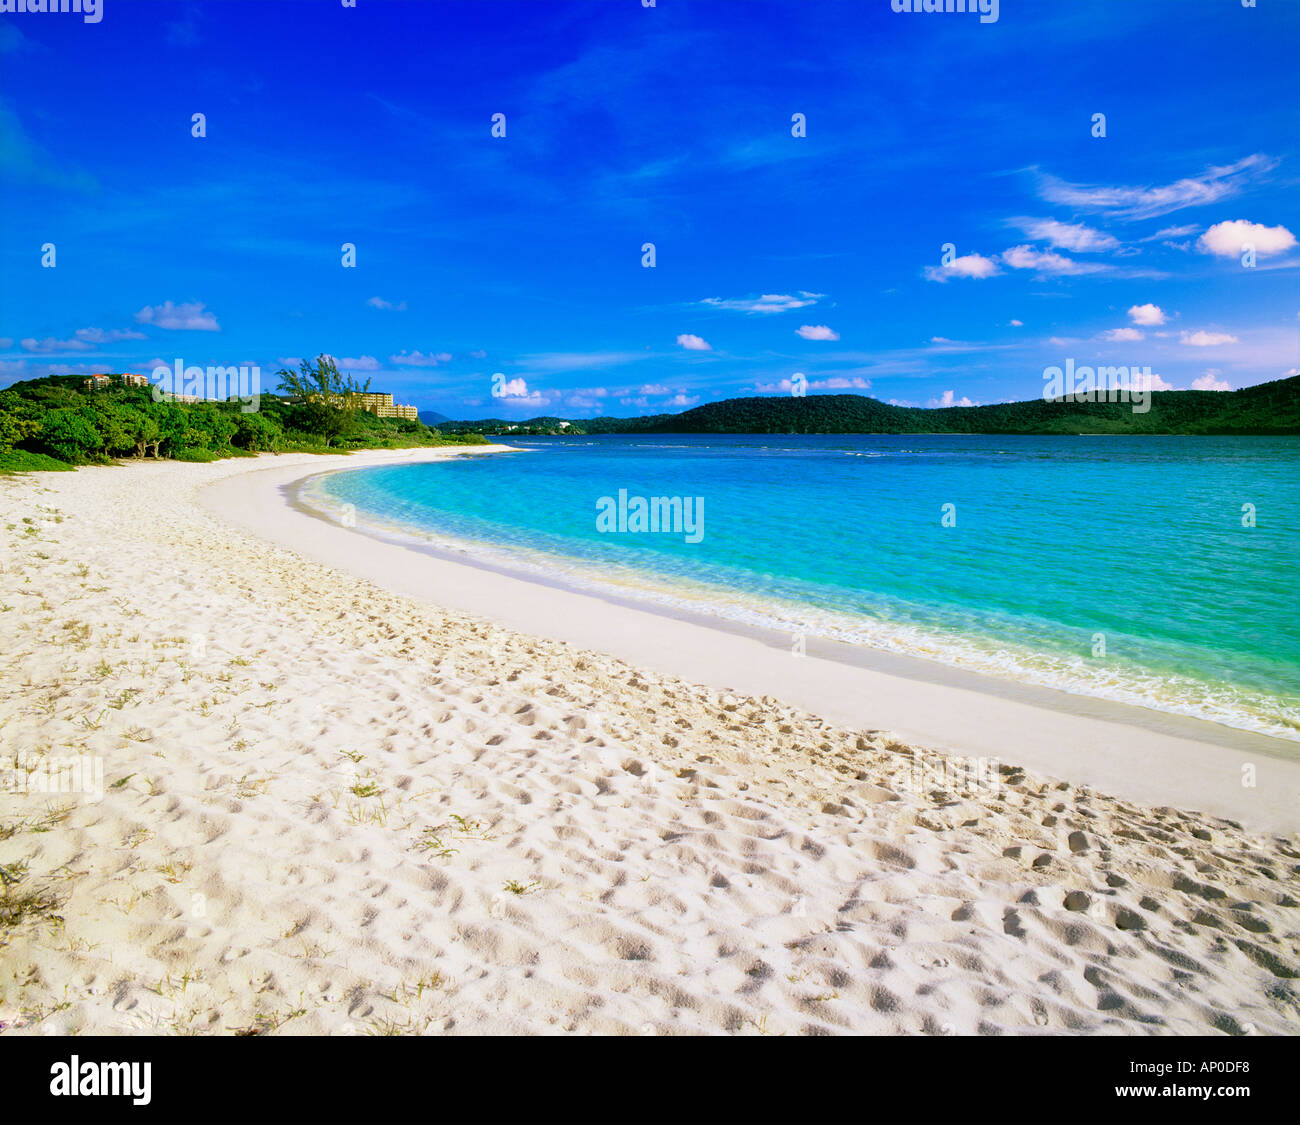 La sabbia bianca e il mare turchese al di sotto di un luminoso cielo blu a Lindquist Beach St Thomas Isole Vergini Americane Foto Stock